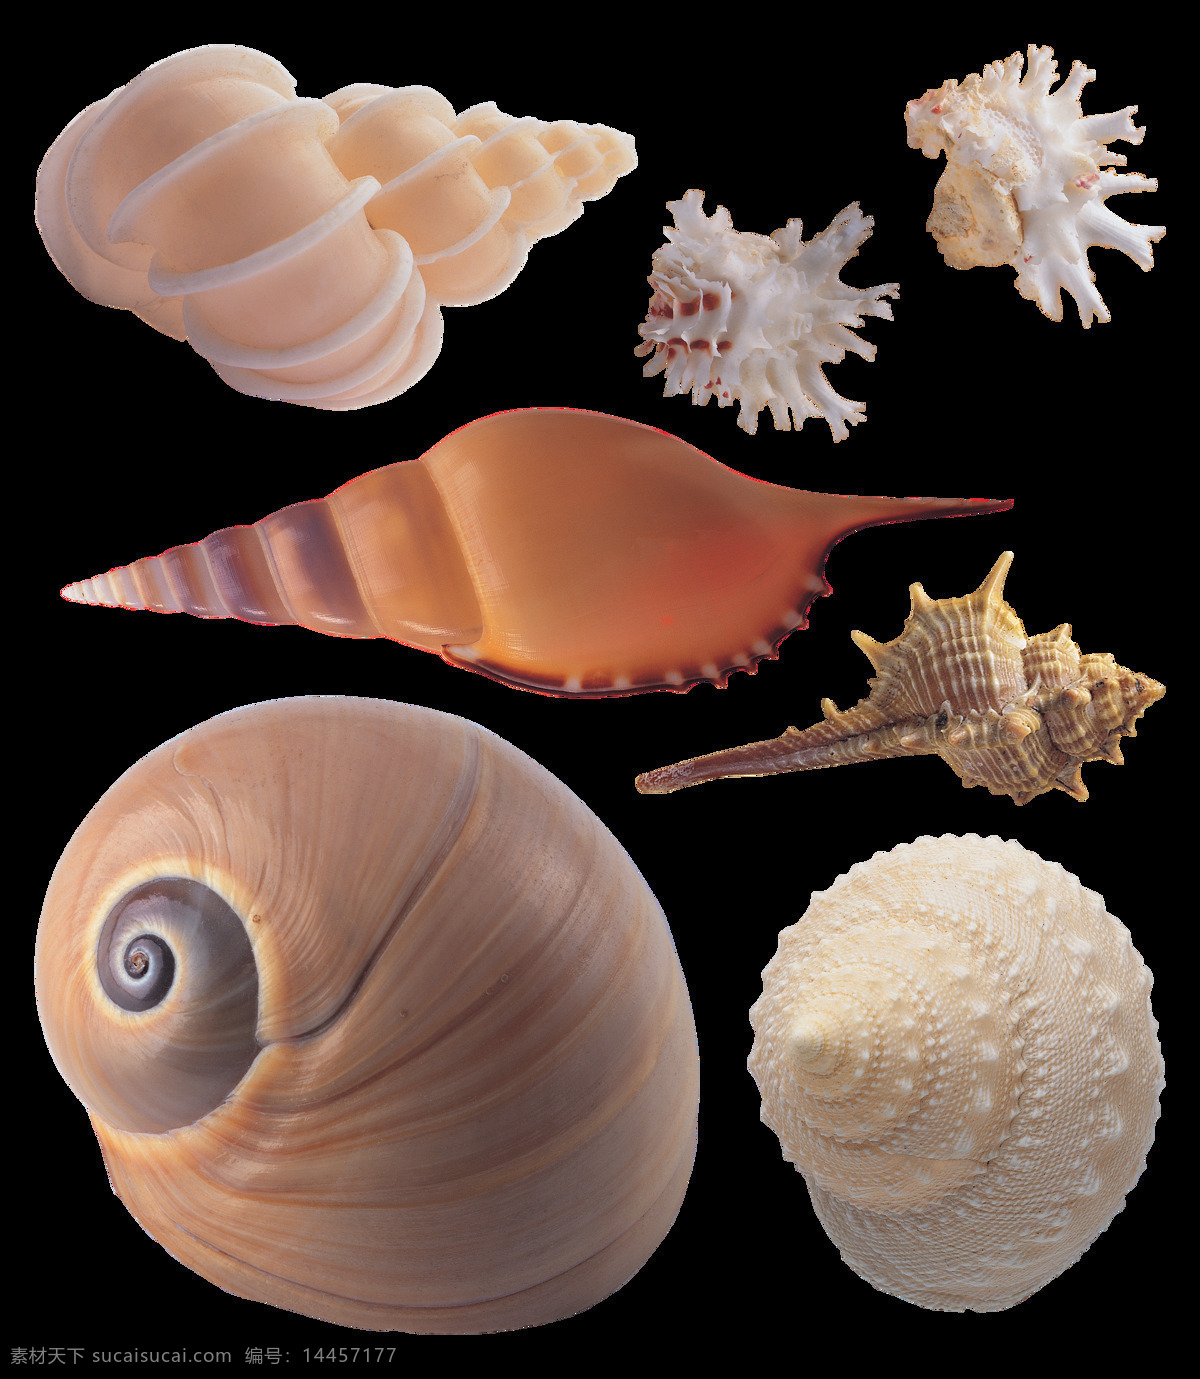 各种 漂亮 贝壳 海螺 免 抠 透明 图 层 海螺简笔画 海螺摄影 贝壳素材 贝壳海星 失量图贝壳 动物的海洋 海洋动物图片 海边贝壳 沙滩海螺 贝壳海螺